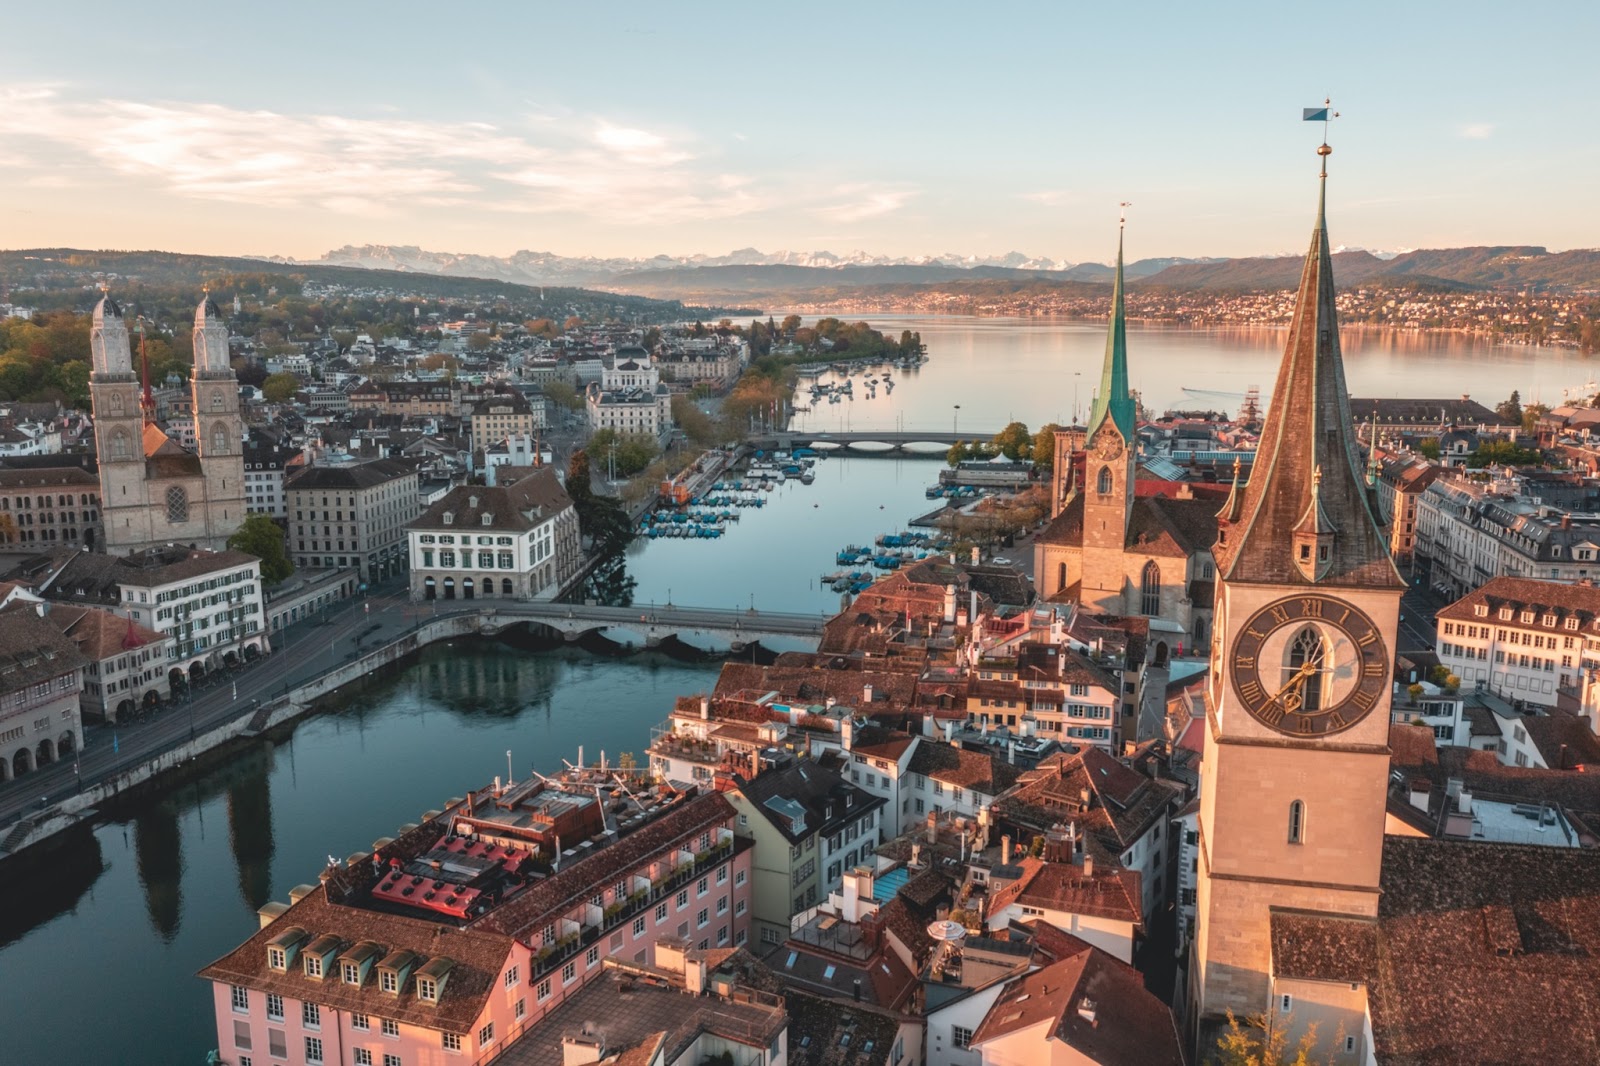 Zurich, Switzerland - spring break destinations